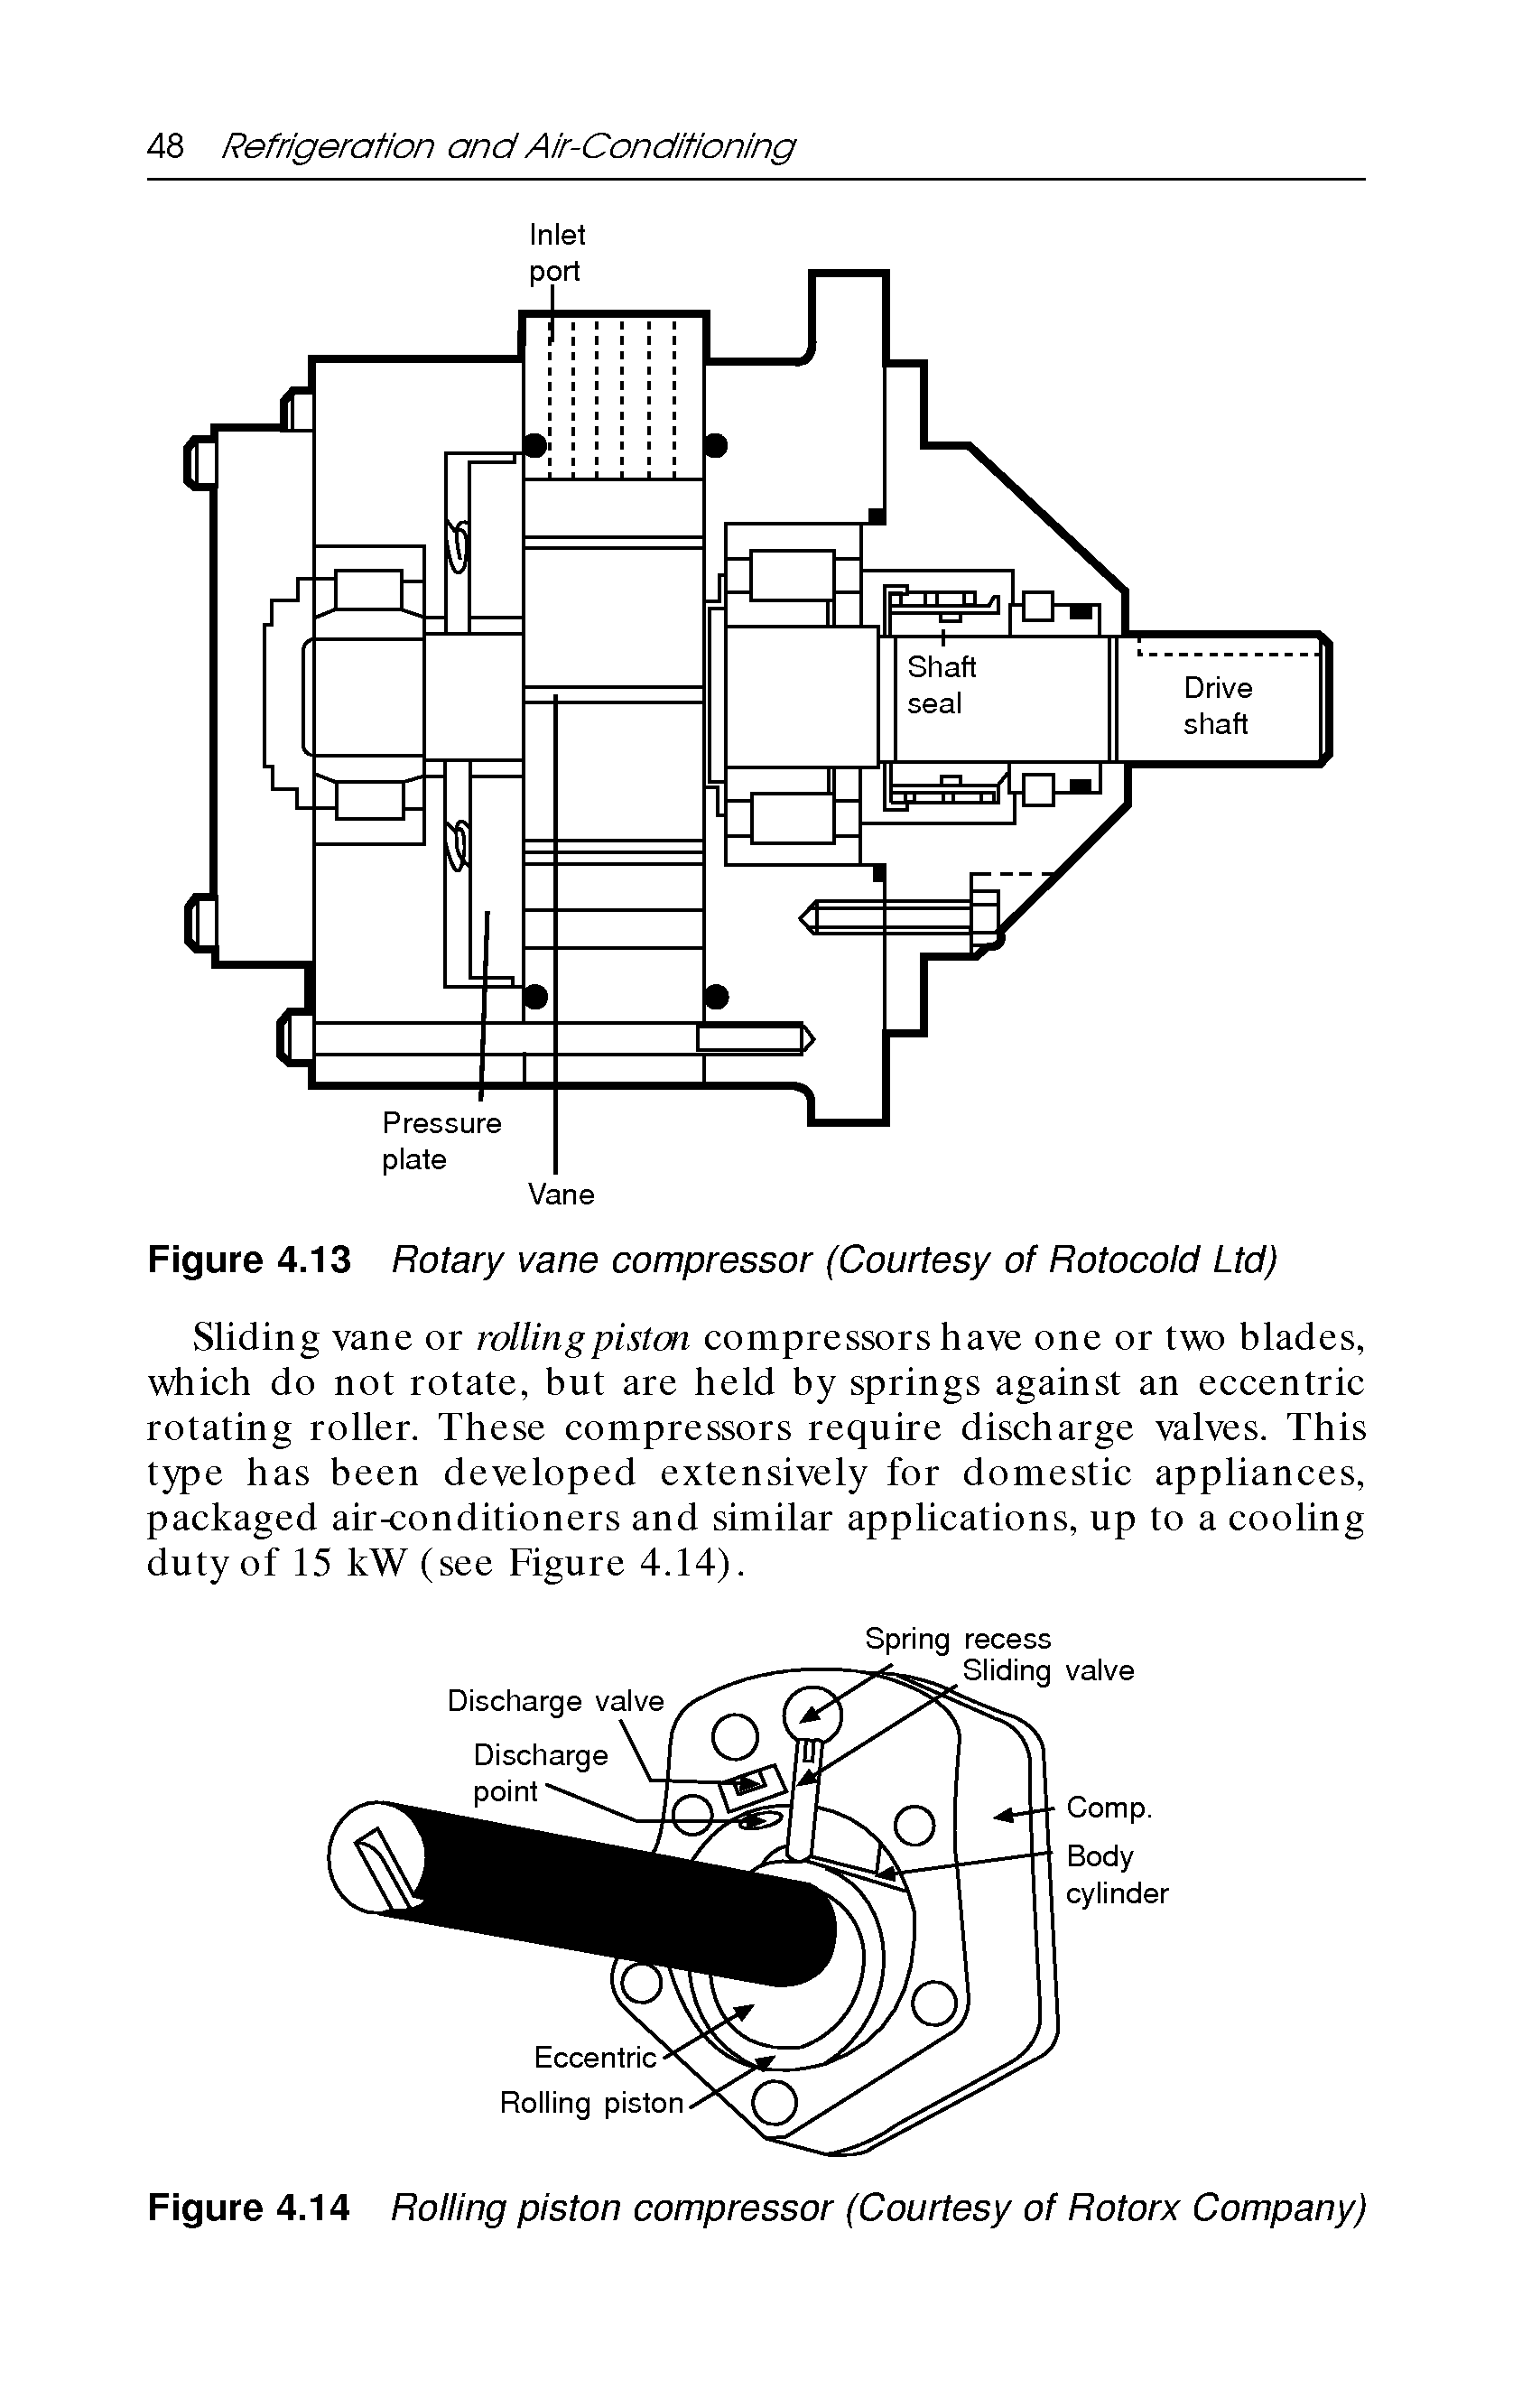 Figure 4.14 Rolling piston compressor (Courtesy of Rotorx Company)...